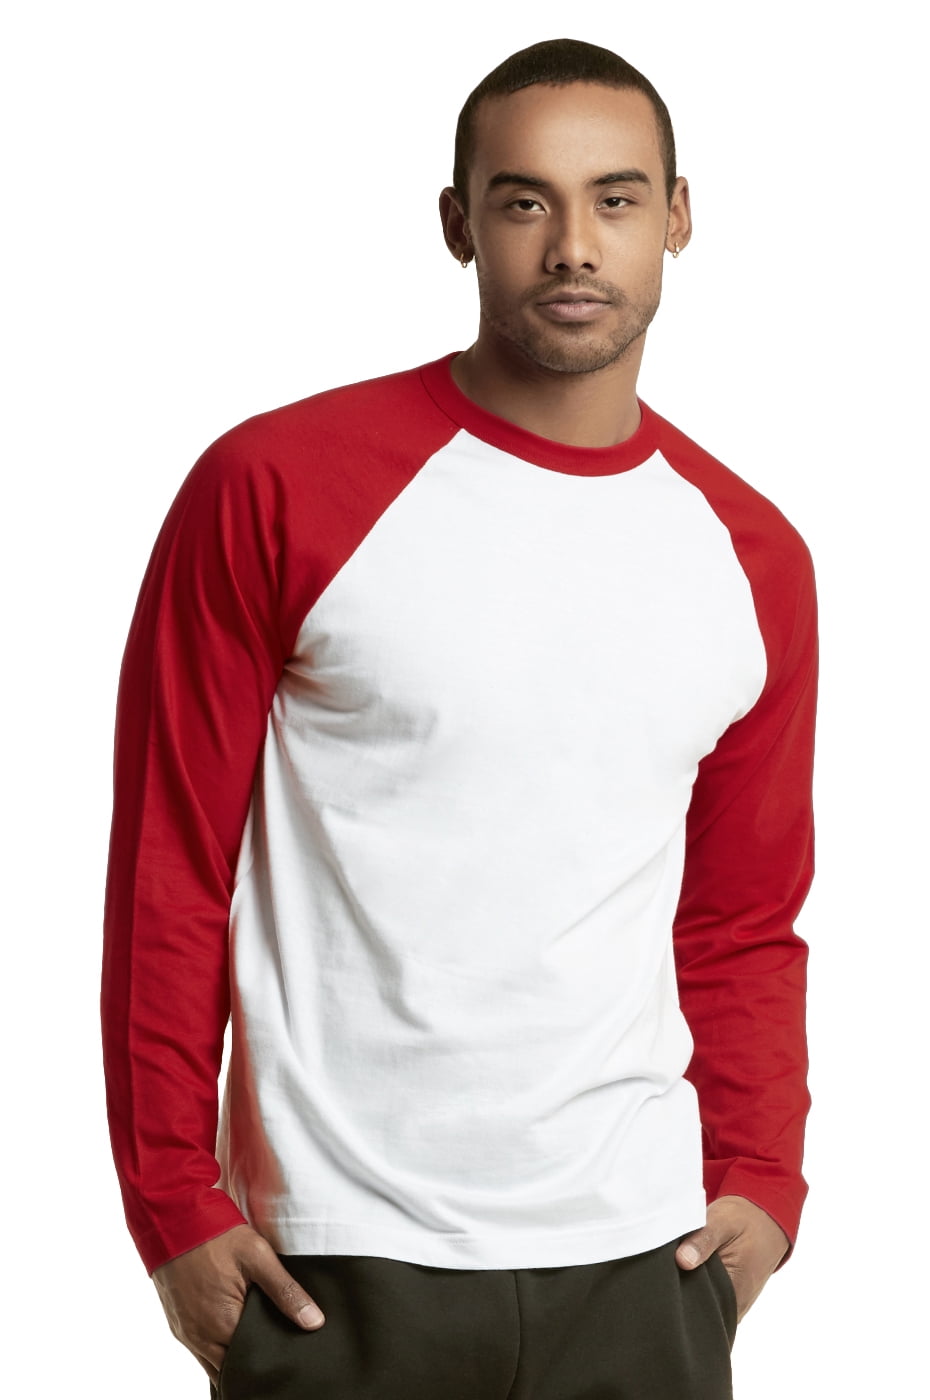 Knocker 3/4 Sleeve Plain BaseballT-Shirt Tee Mens 